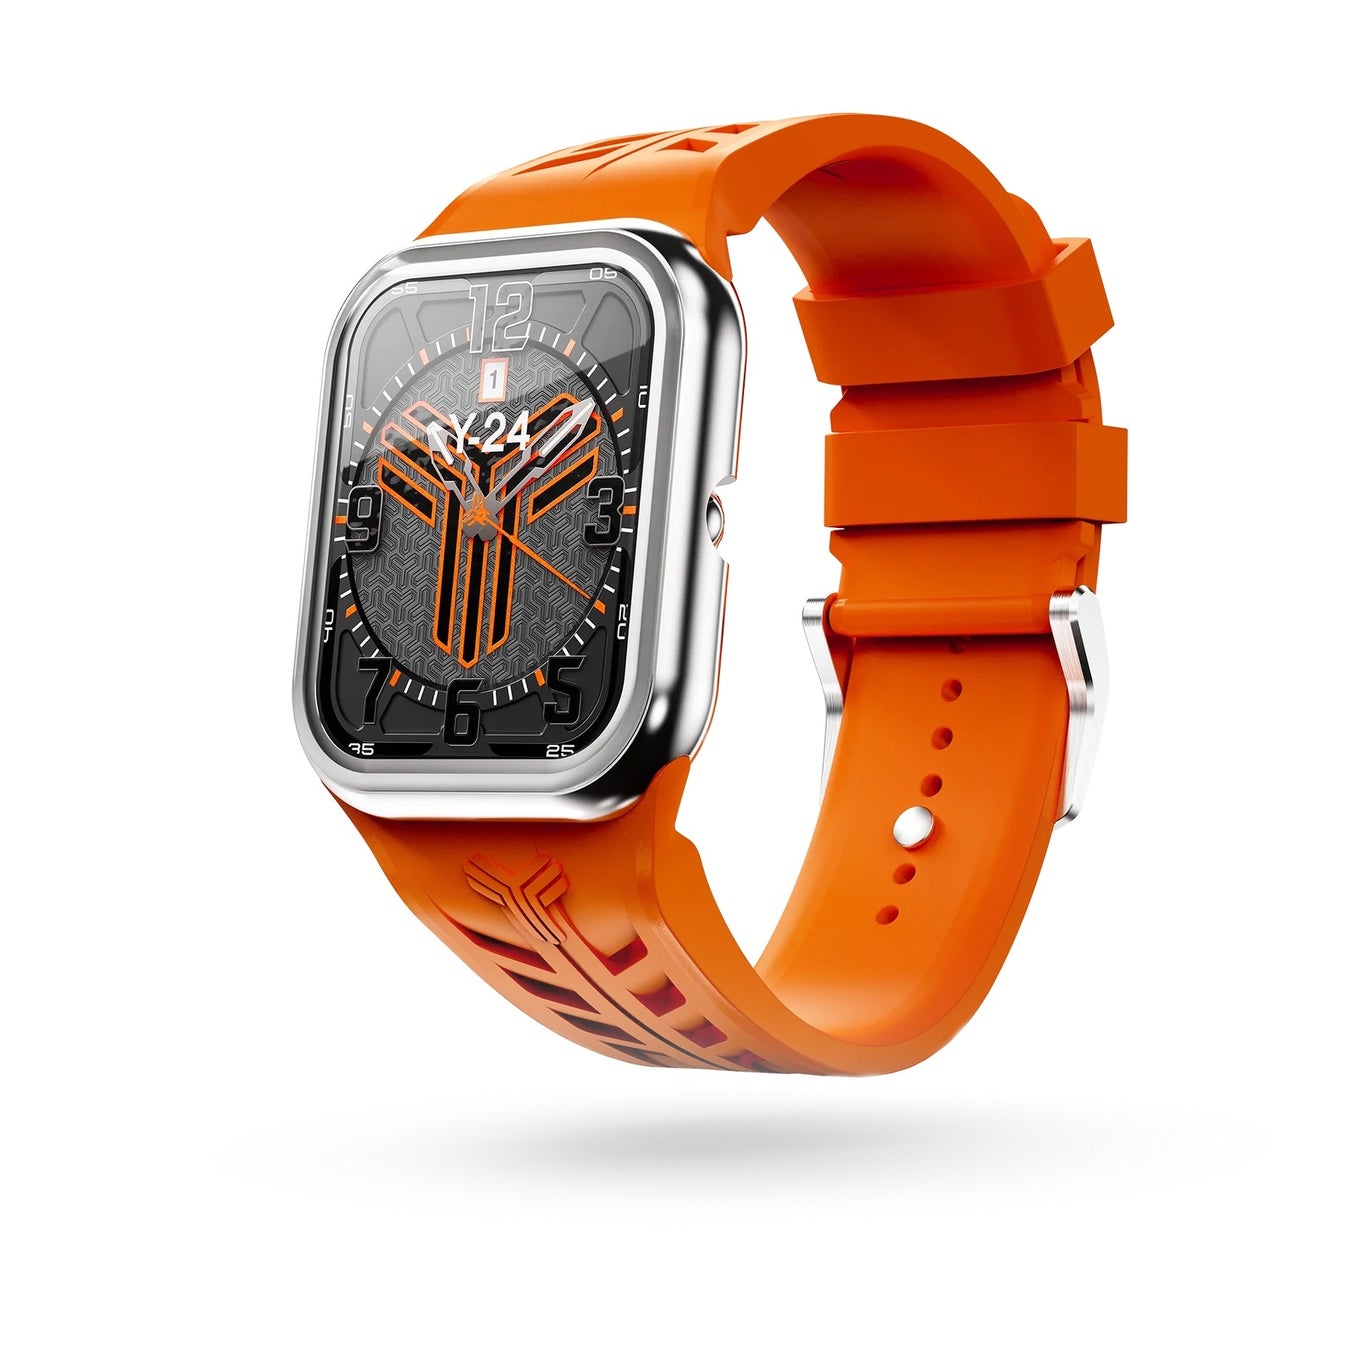 アップルウォッチケースを展開する「Y24」から発売されたクォーツ(電池式)時計に新色が登場。